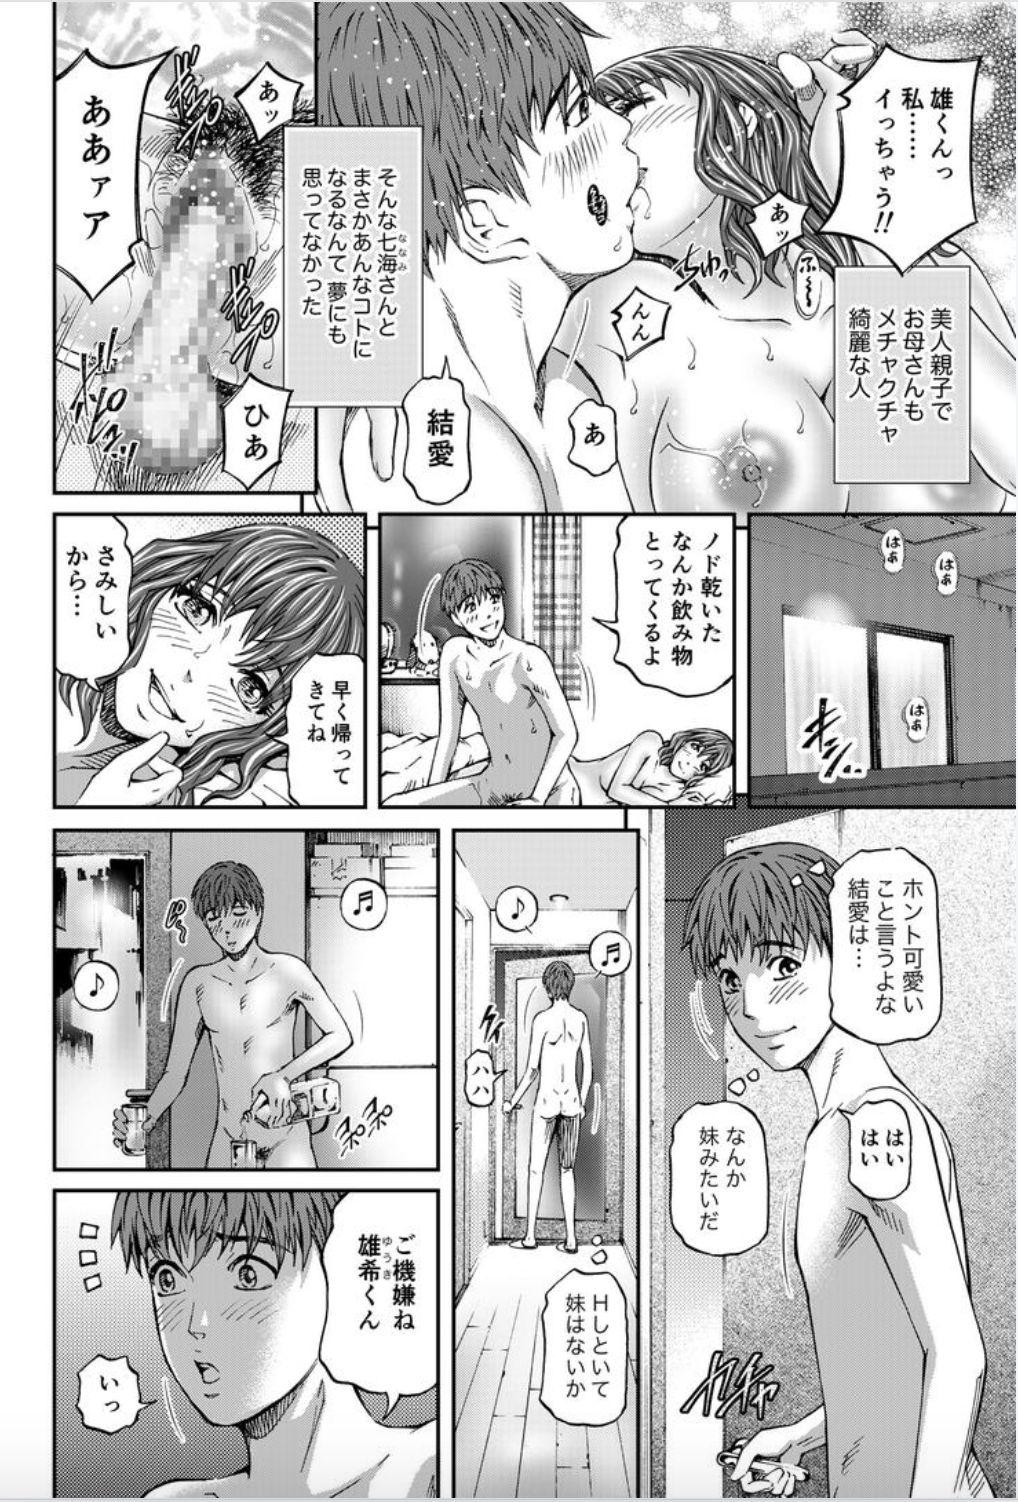 Teenage Onna-tachi ga Iku Toki... Ero Drama Vol. 8 Datte, Kanojo no Haha ga... Facials - Page 4